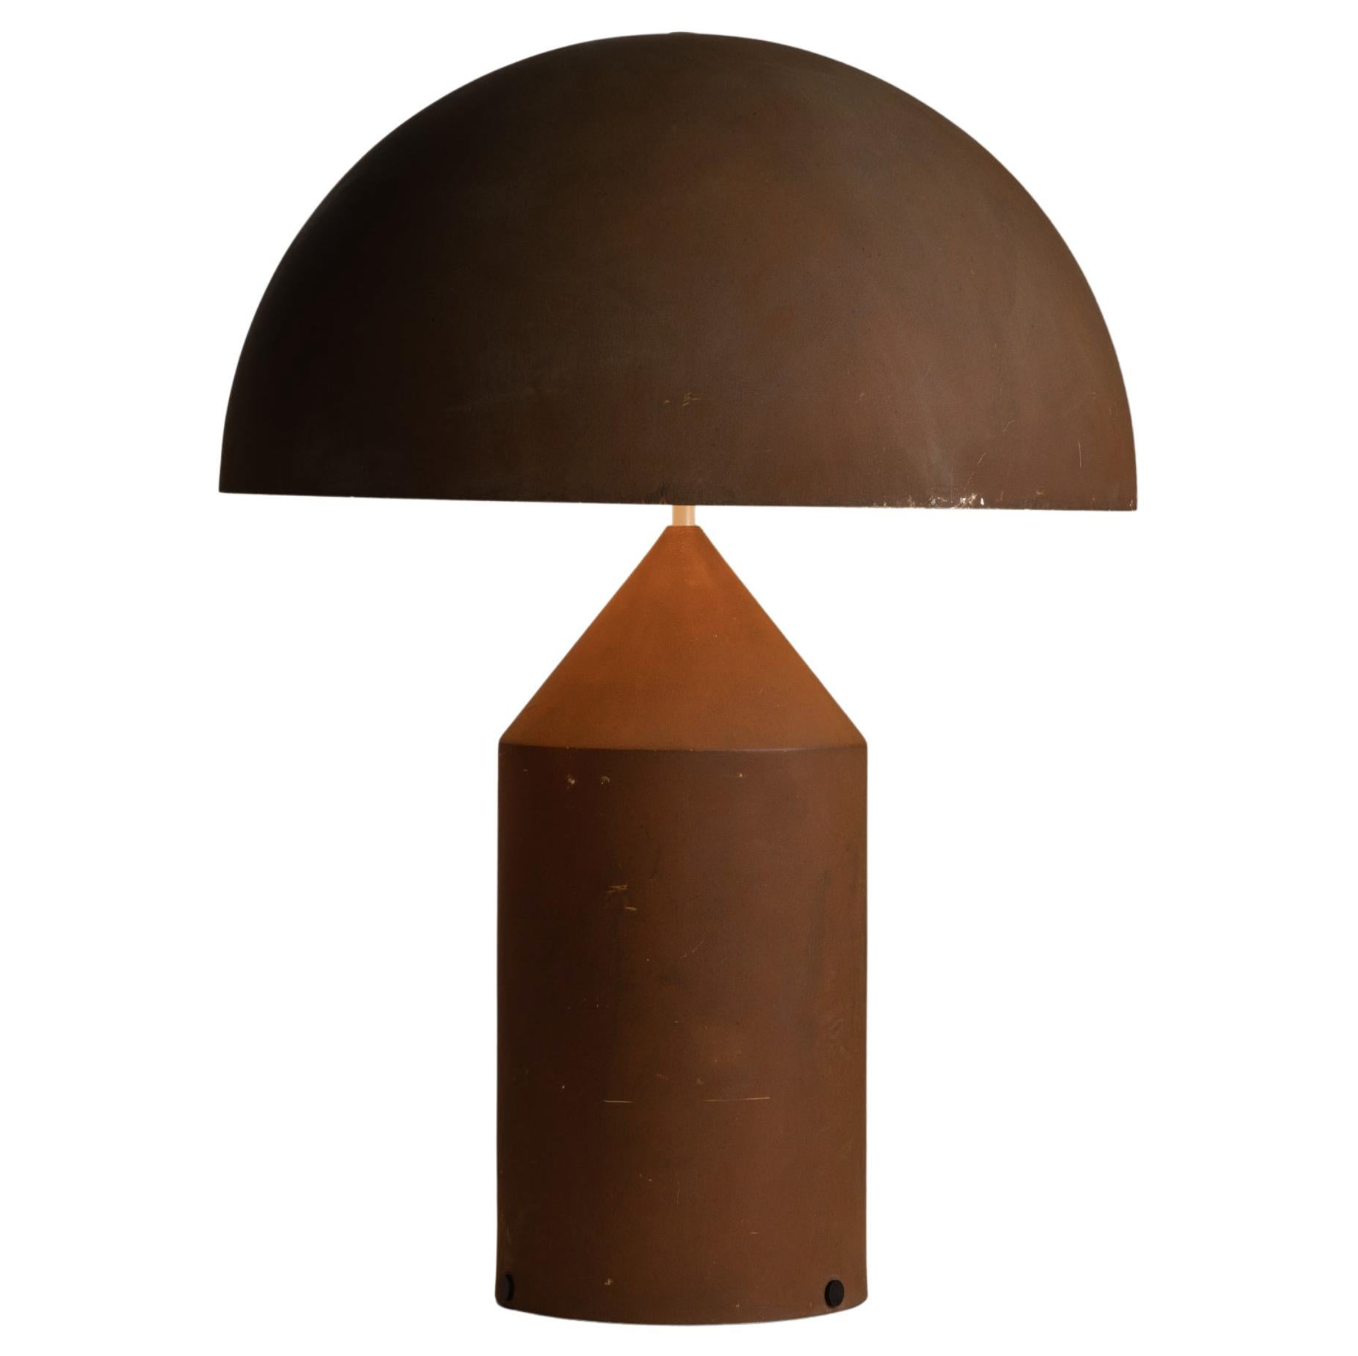 Atollo 239 Table Lamp by Vico Magistretti 